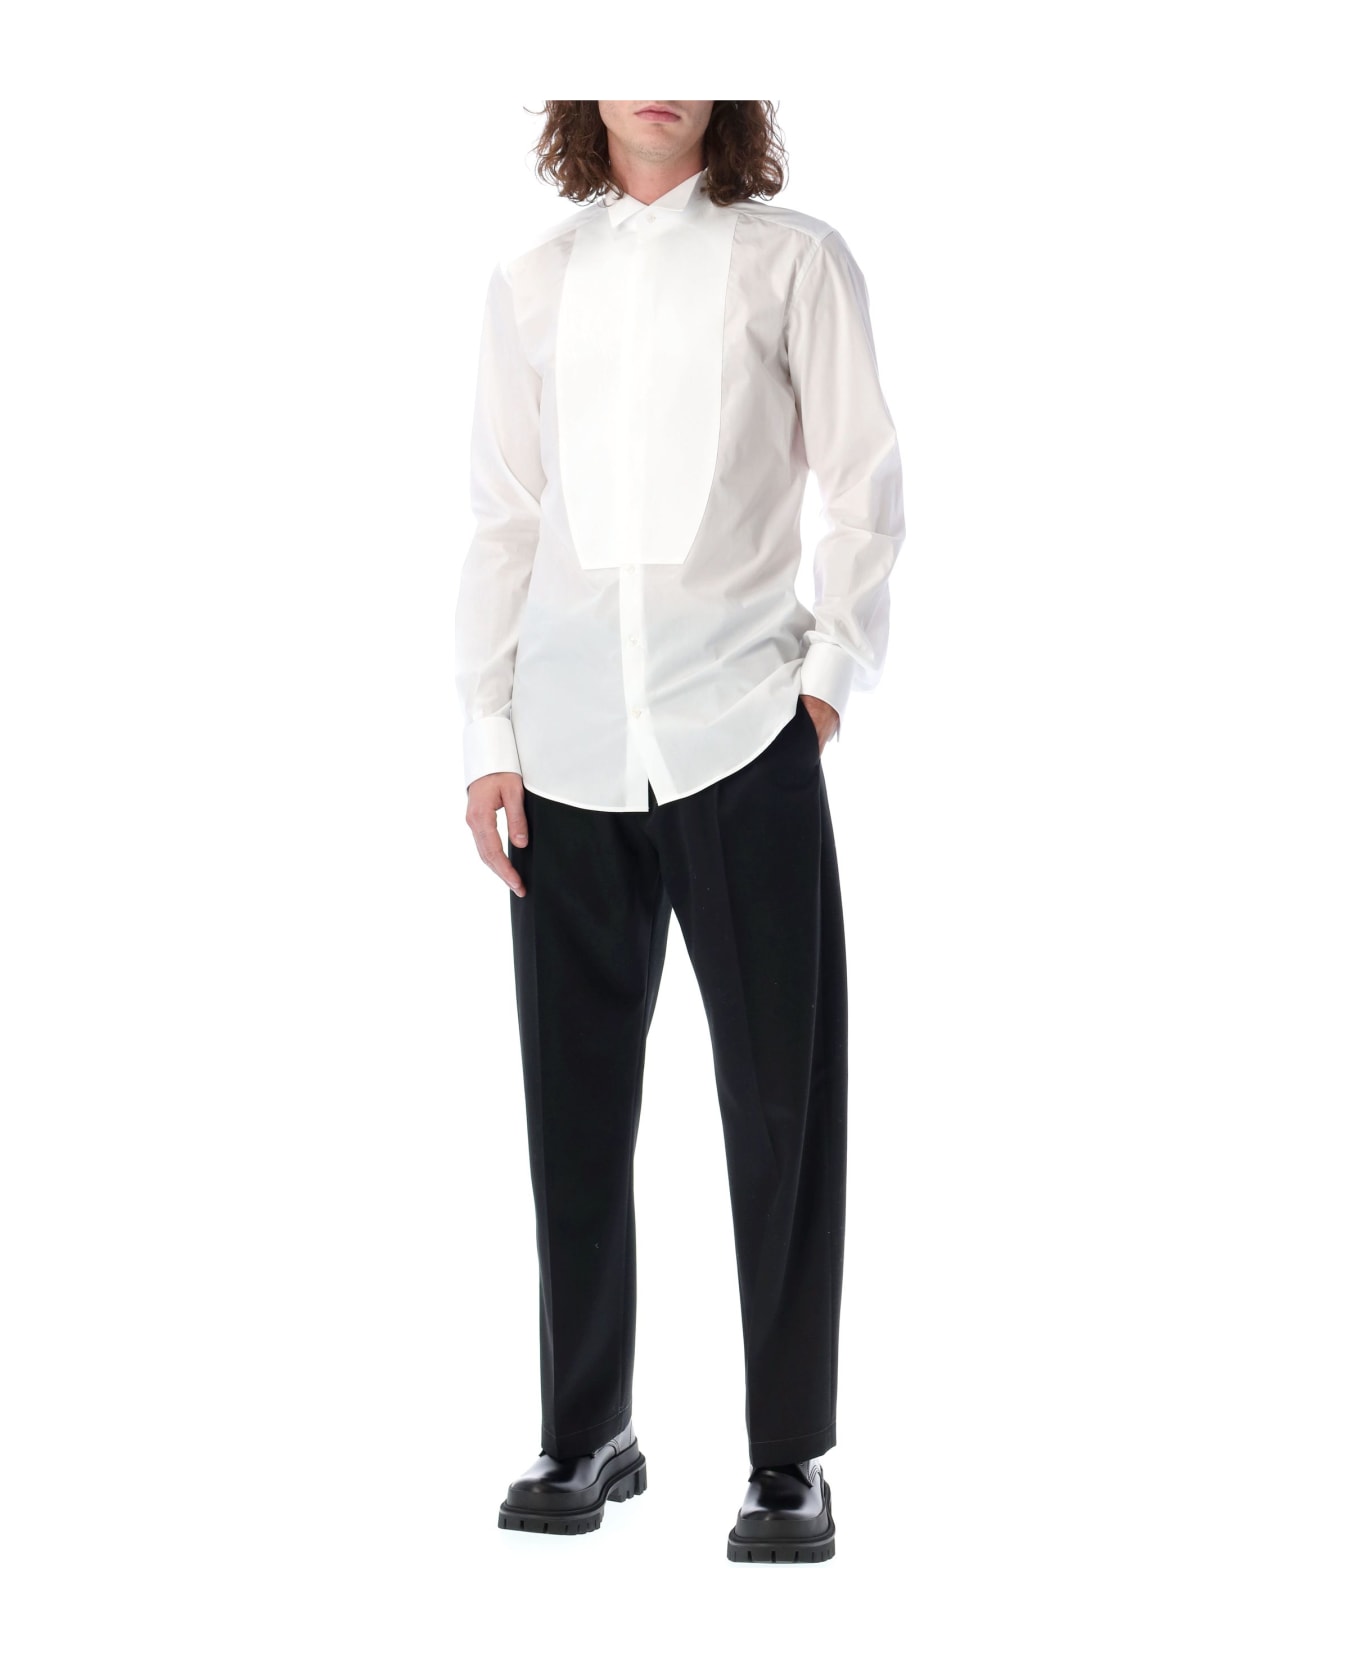 Dolce & Gabbana Tuxedo Shirt - WHITE シャツ